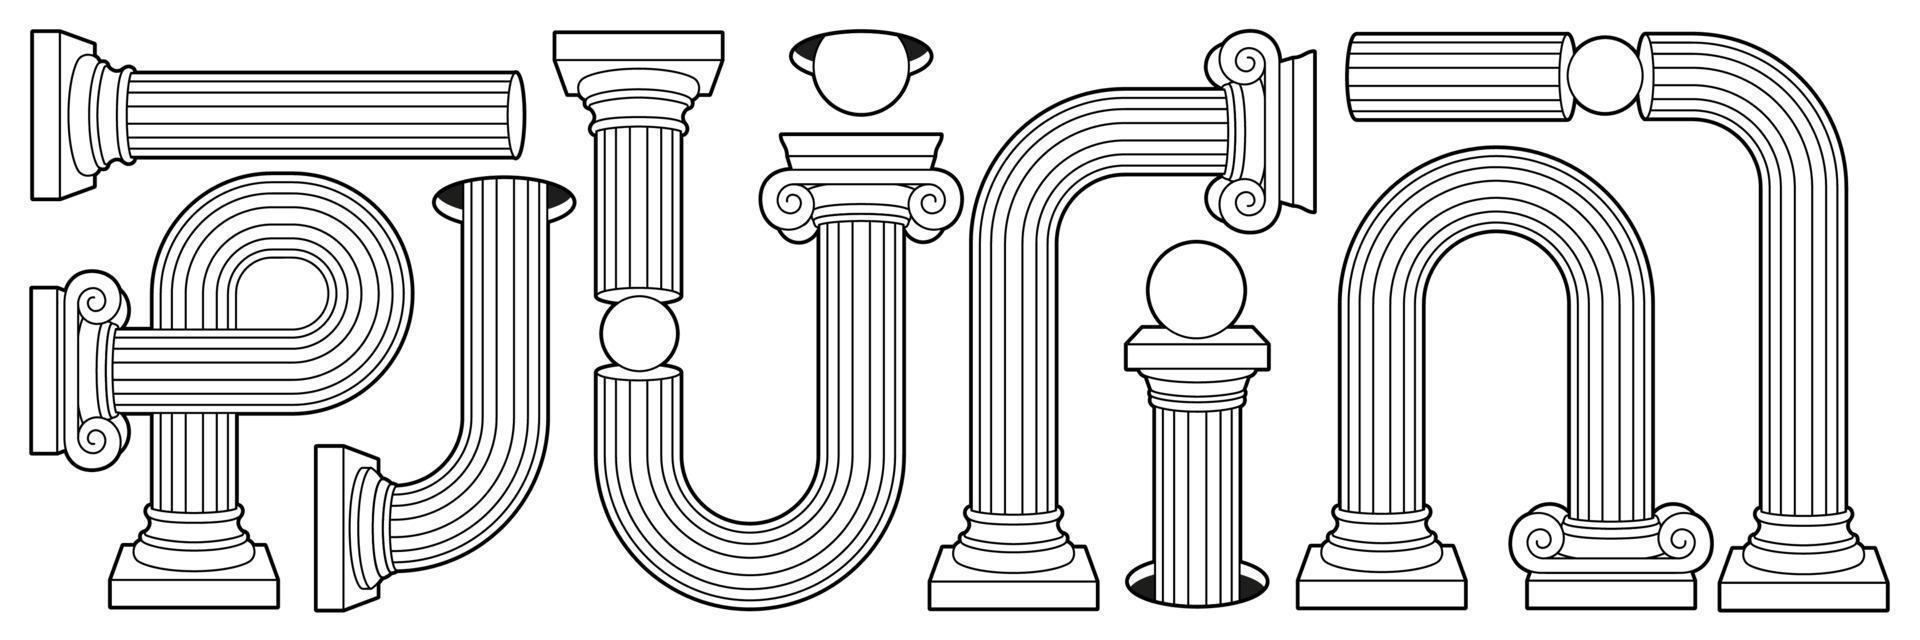 griechische antike säule, säule, sockel im umriss des zeitgenössischen stils. schwarze und weiße Farben. vektor